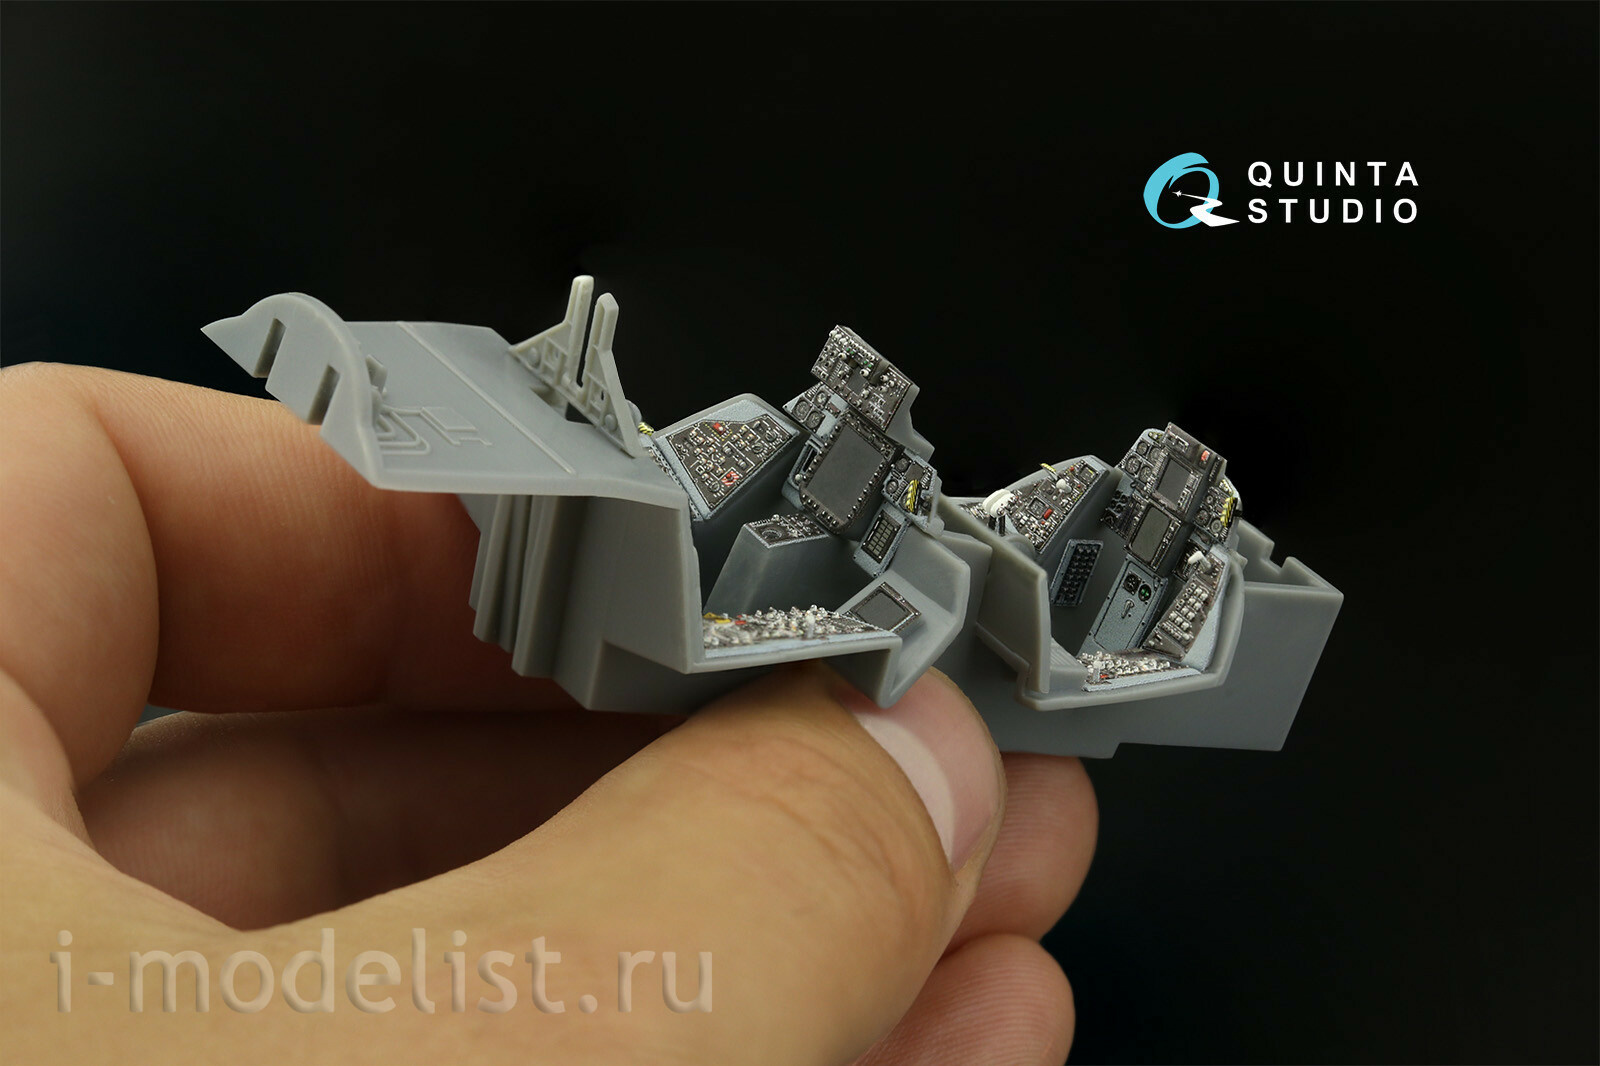 QDS-48396 Quinta Studio 1/48 3D Декаль интерьера кабины F-14B (HobbyBoss) (Малая версия)